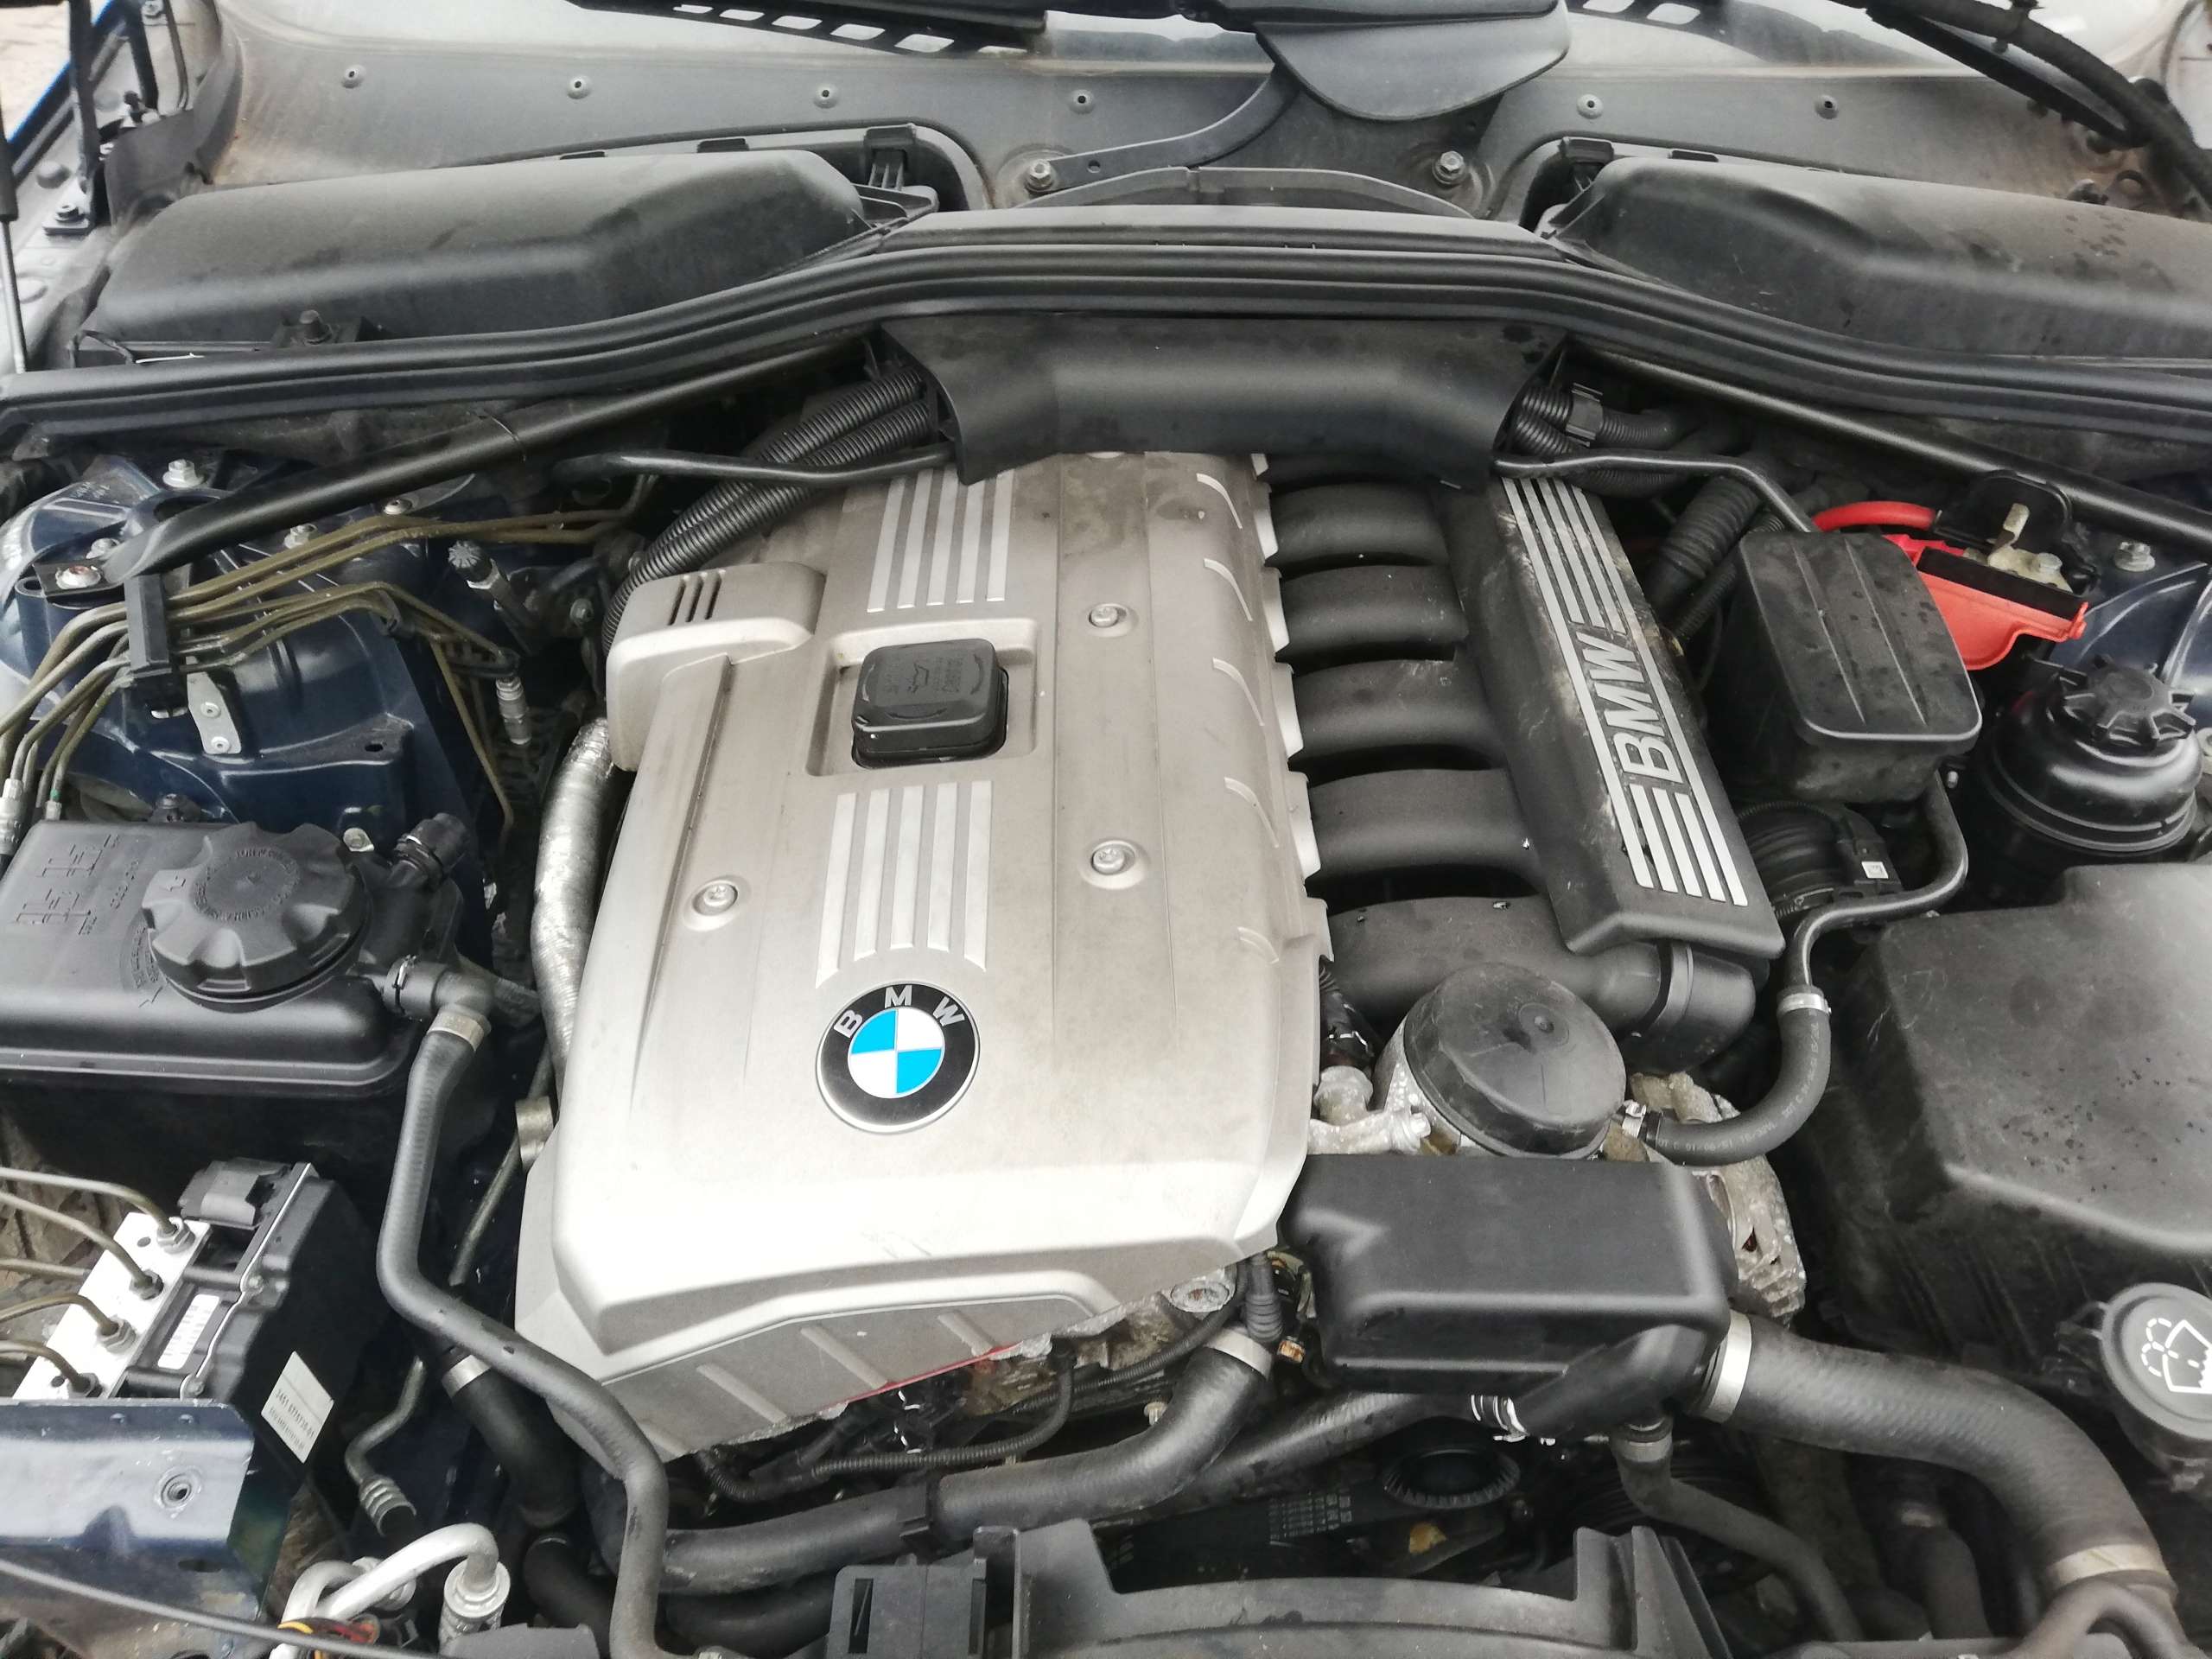 BMW N52B30 – поршневый двигатель с 6 цилиндрами и двумя распределительными валами DOHC, системой Valvetronic и Double VANOS на обоих валах Здесь реализованы ТОПовые фирменные технологии BMW на момент выпуска мотора